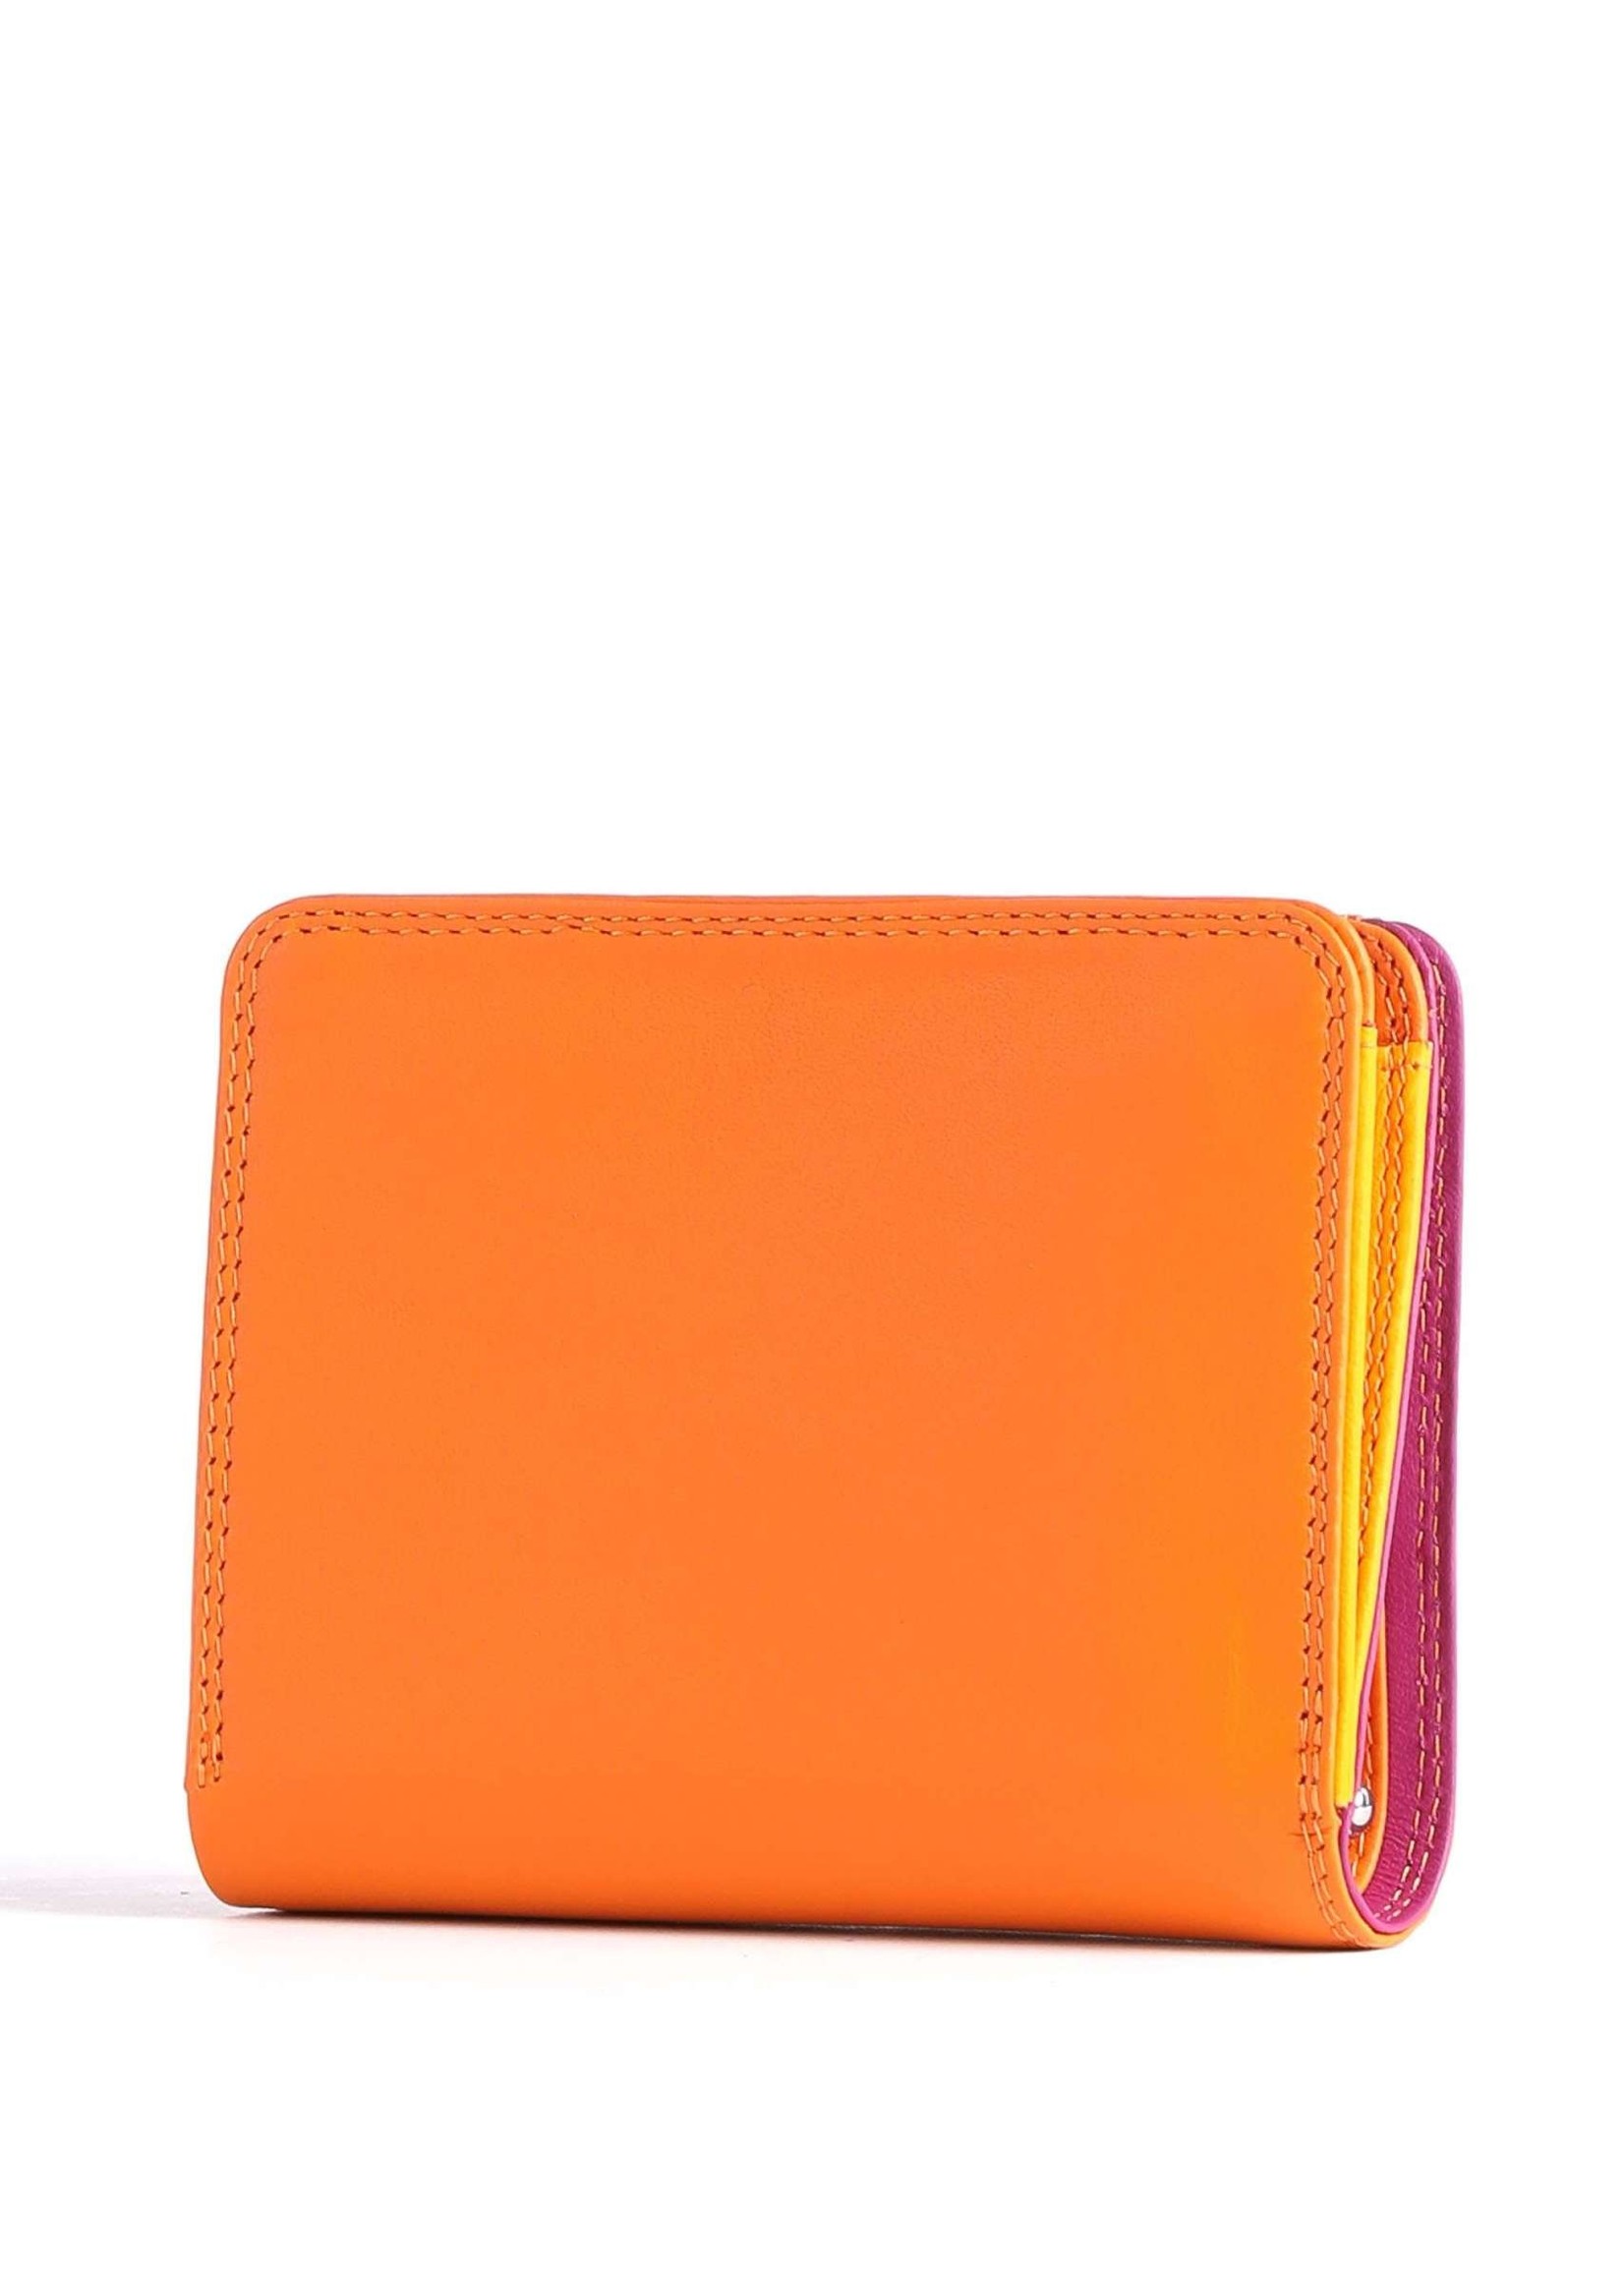 MyWalit Medium Wallet w/Zip Around Purse Orange